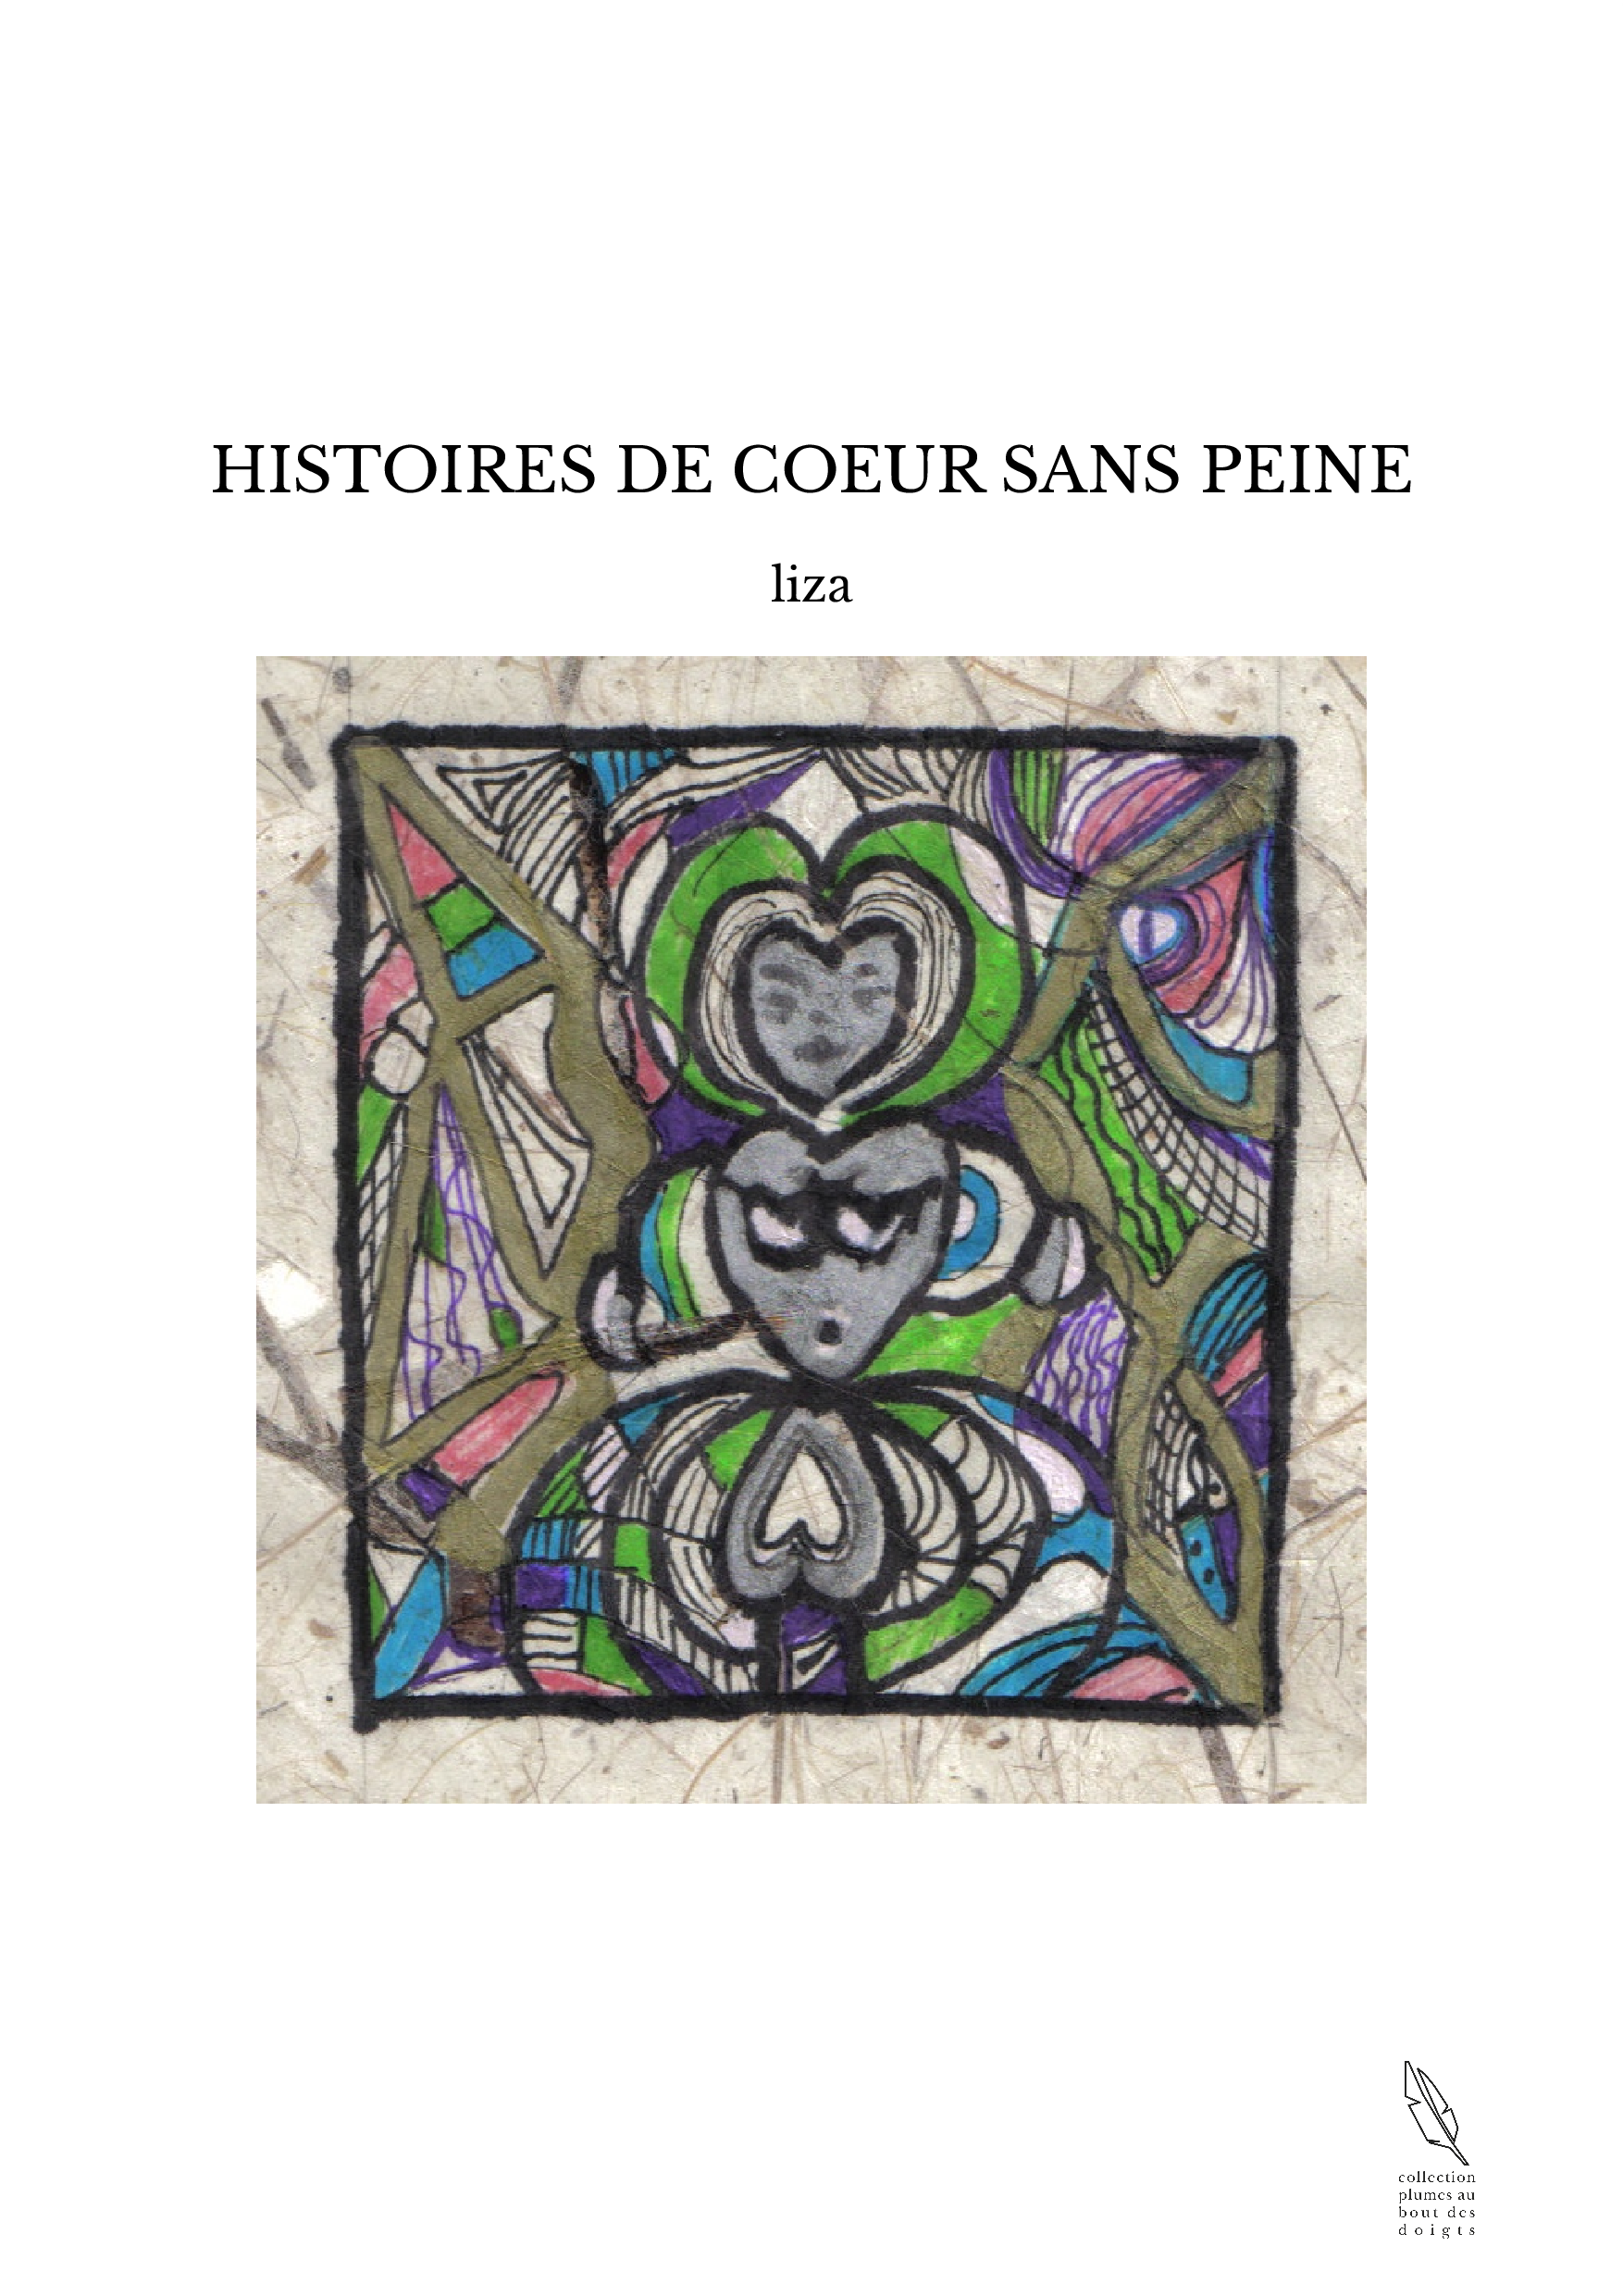 HISTOIRES DE COEUR SANS PEINE - LIZA